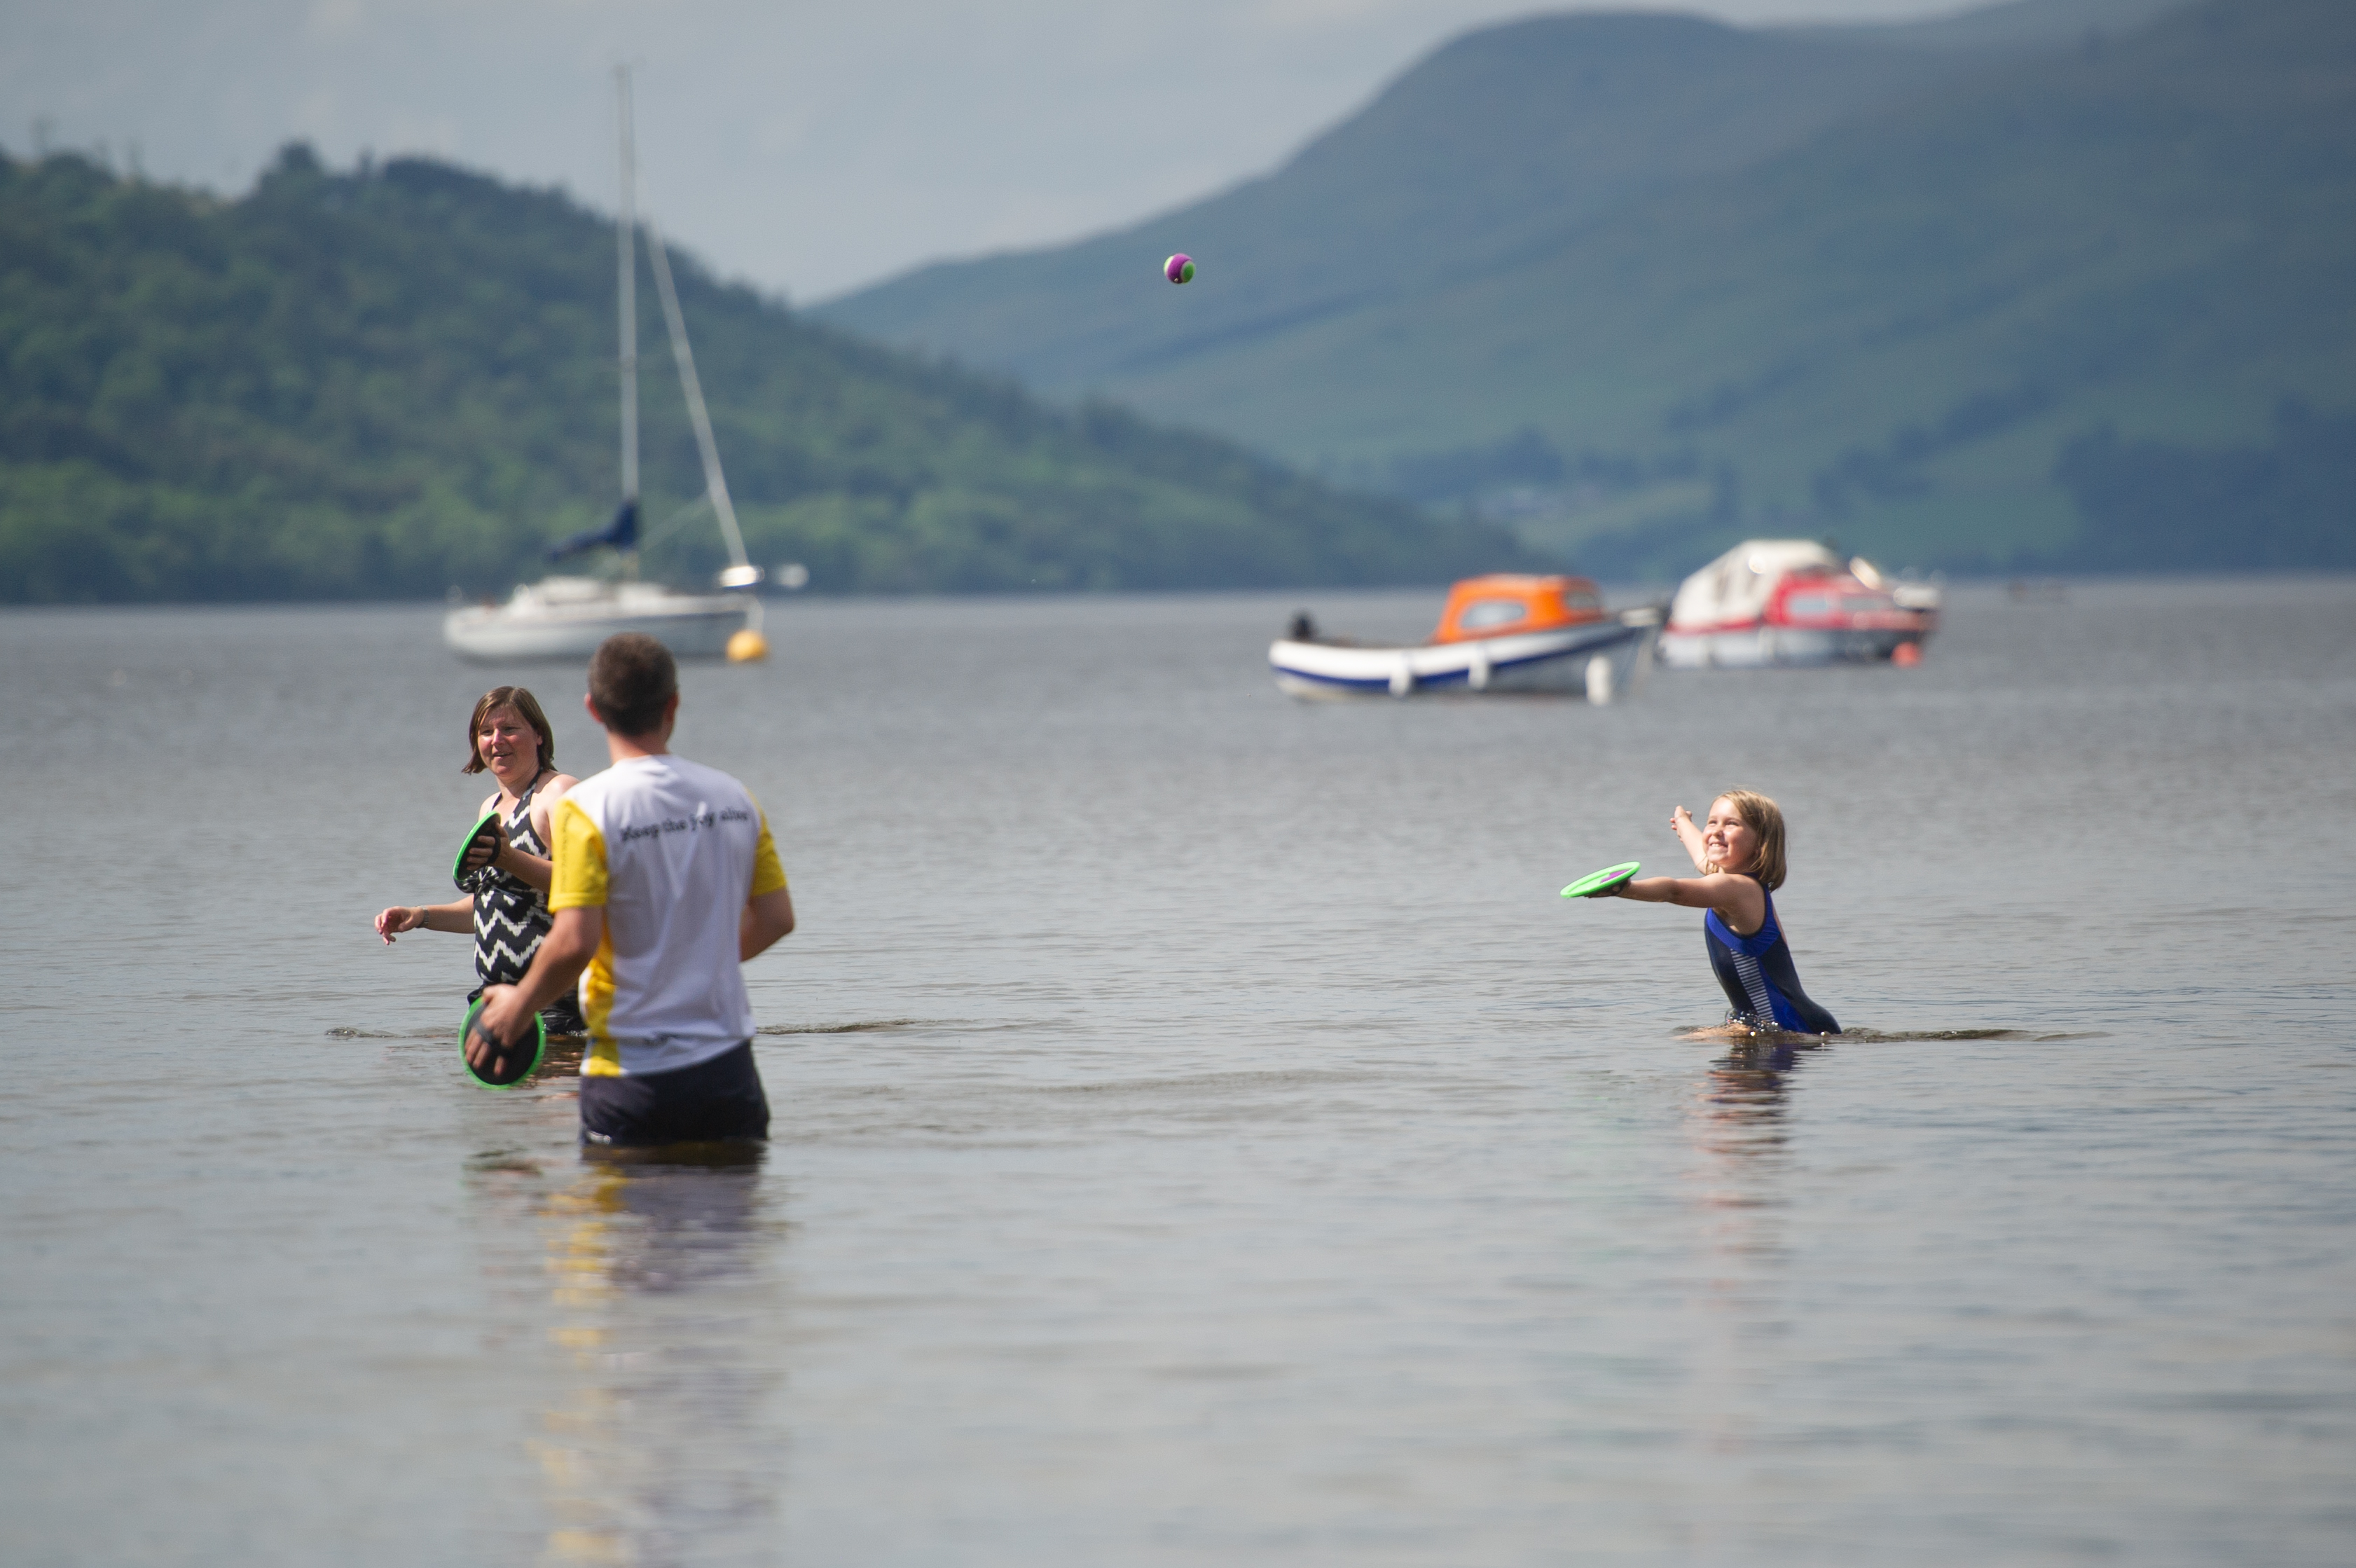 A family enjoys the July 2019 heat at Killin, Loch Tay.